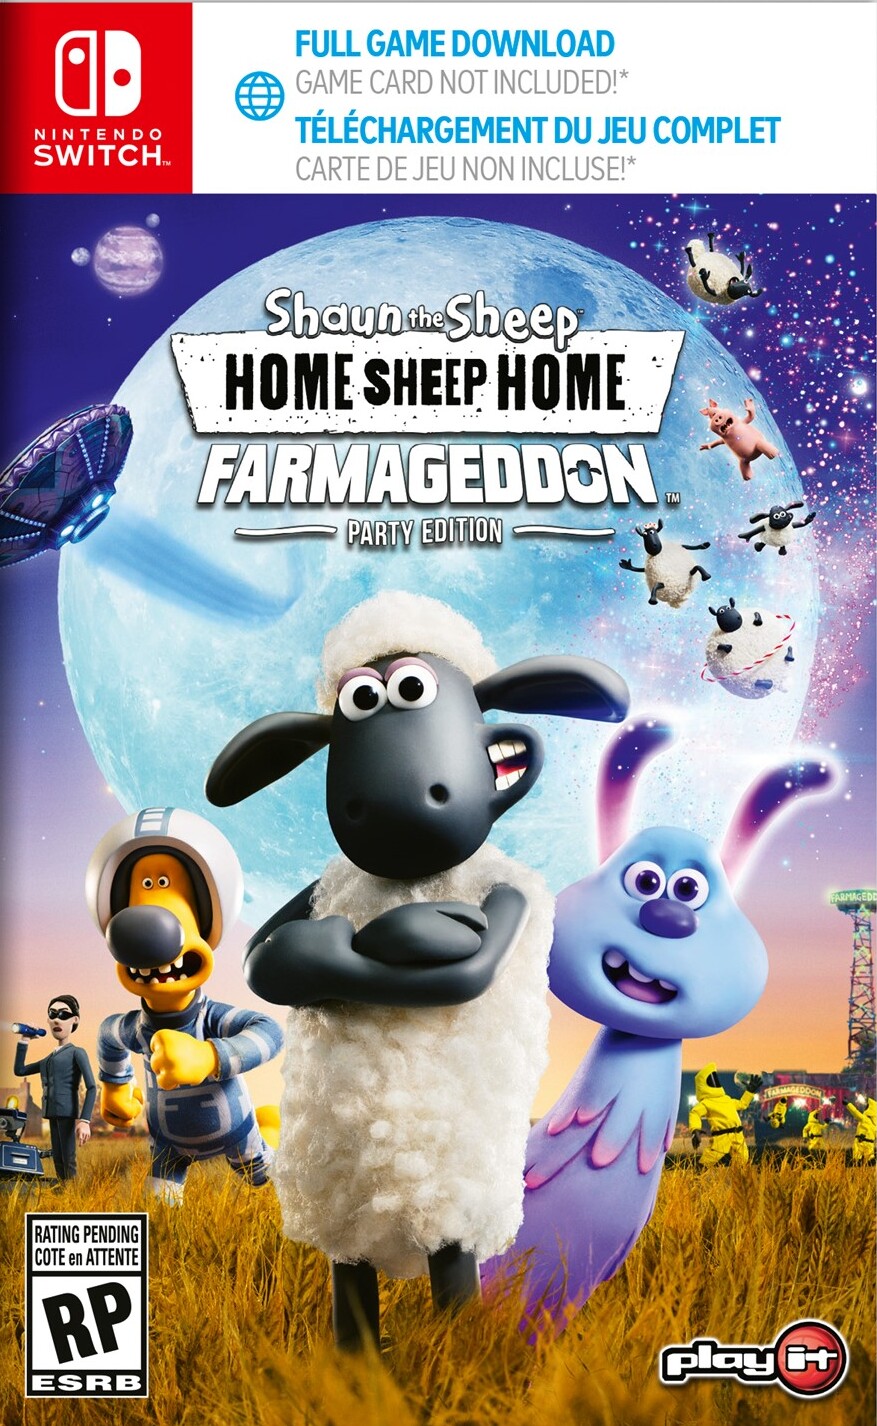 jaquette du jeu vidéo Home Sheep Home: Farmageddon Party Edition